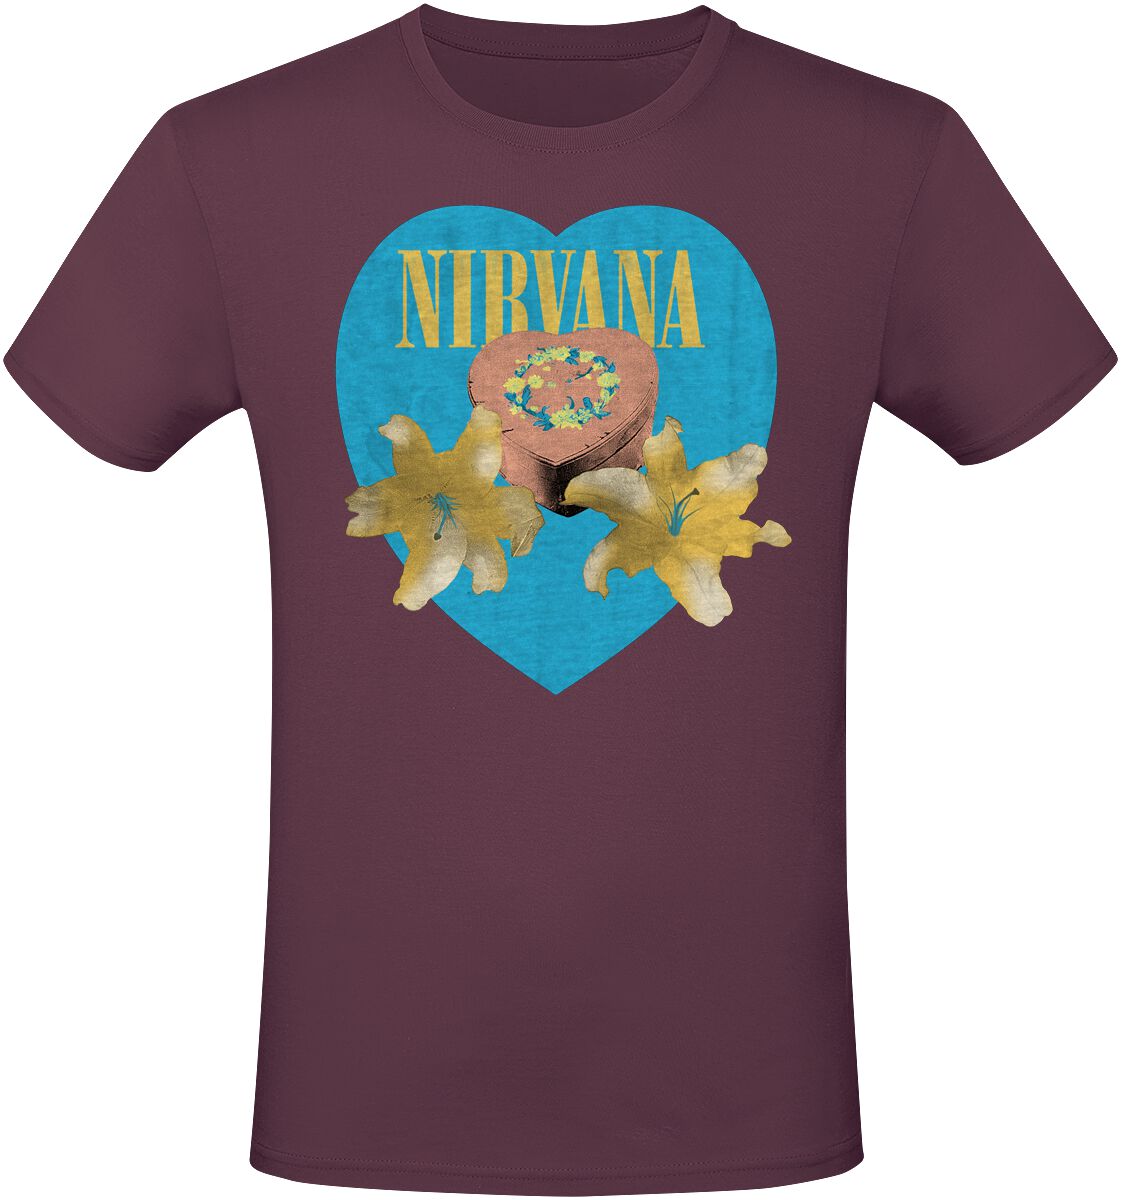 Nirvana T-Shirt - Flower Heart - S bis 3XL - für Männer - Größe M - rot  - Lizenziertes Merchandise!